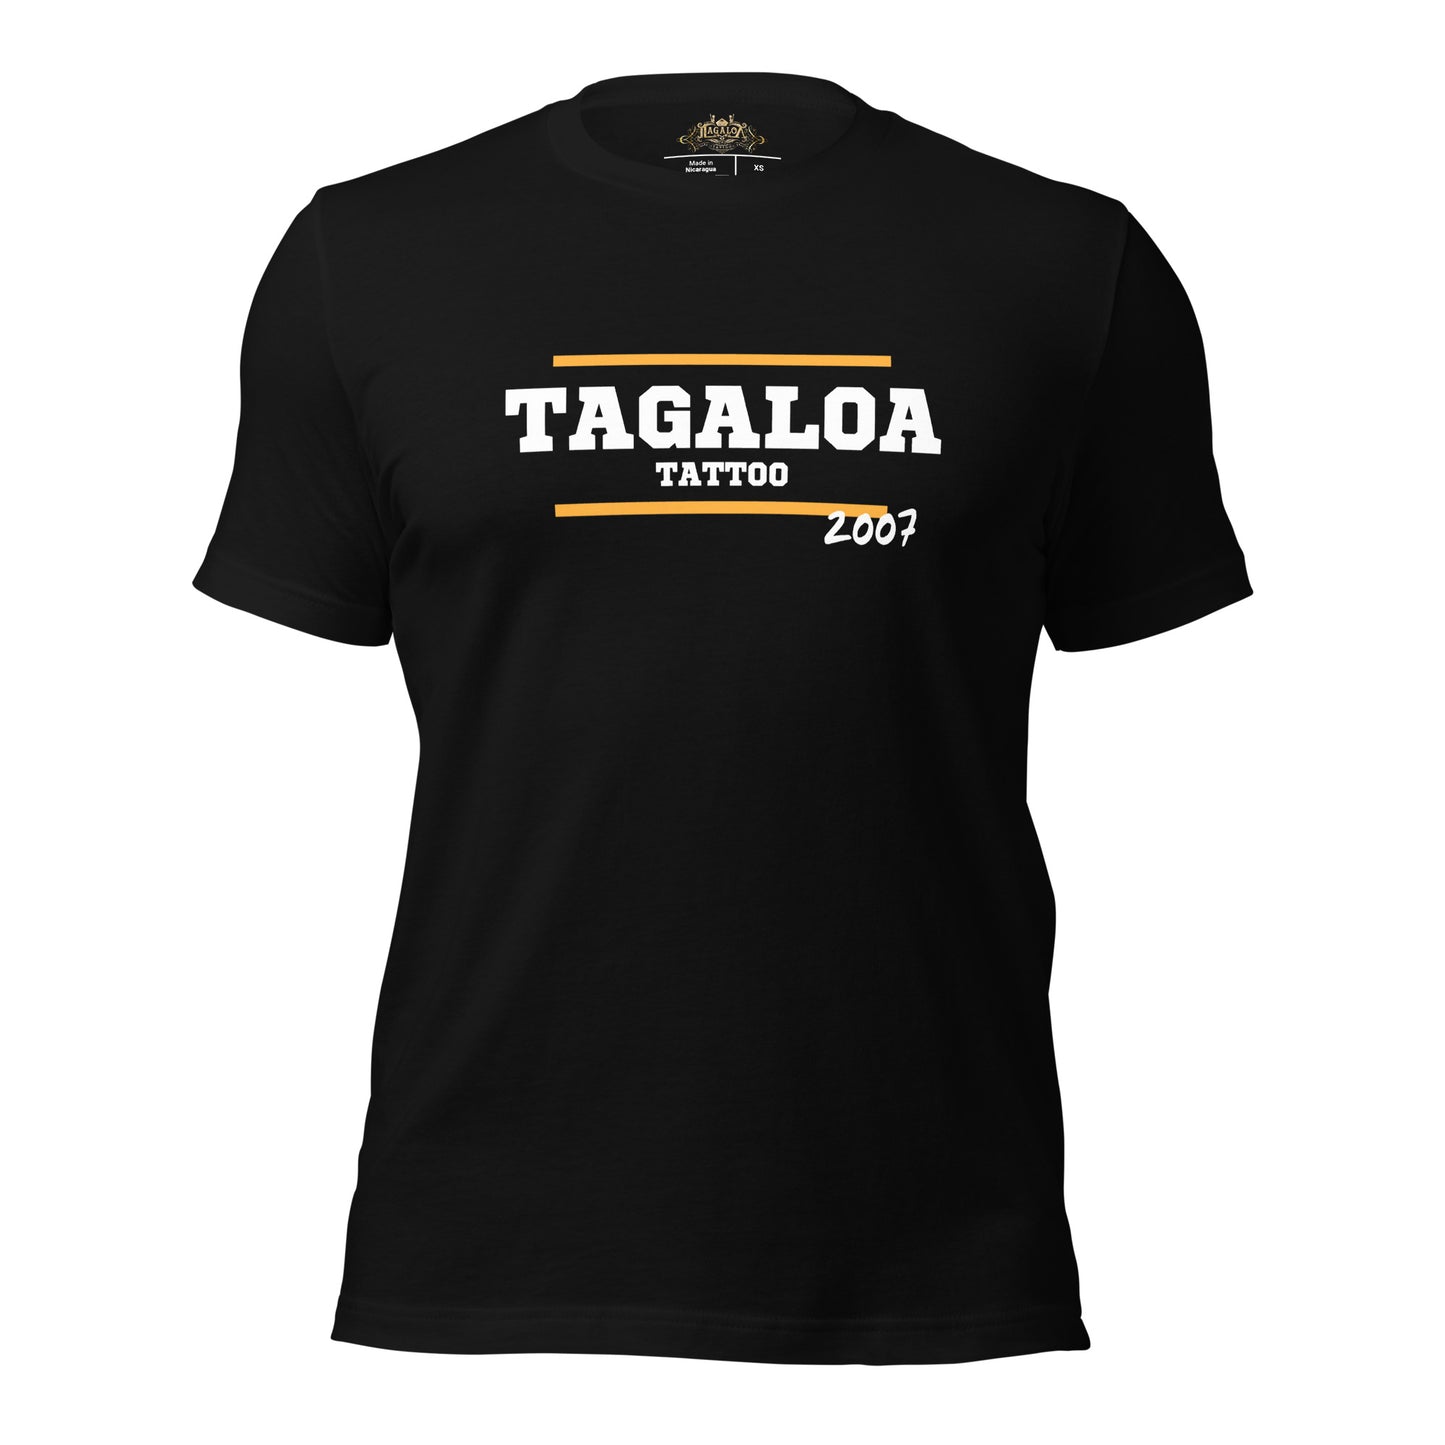 Classic Tagaloa Tattoo Tee